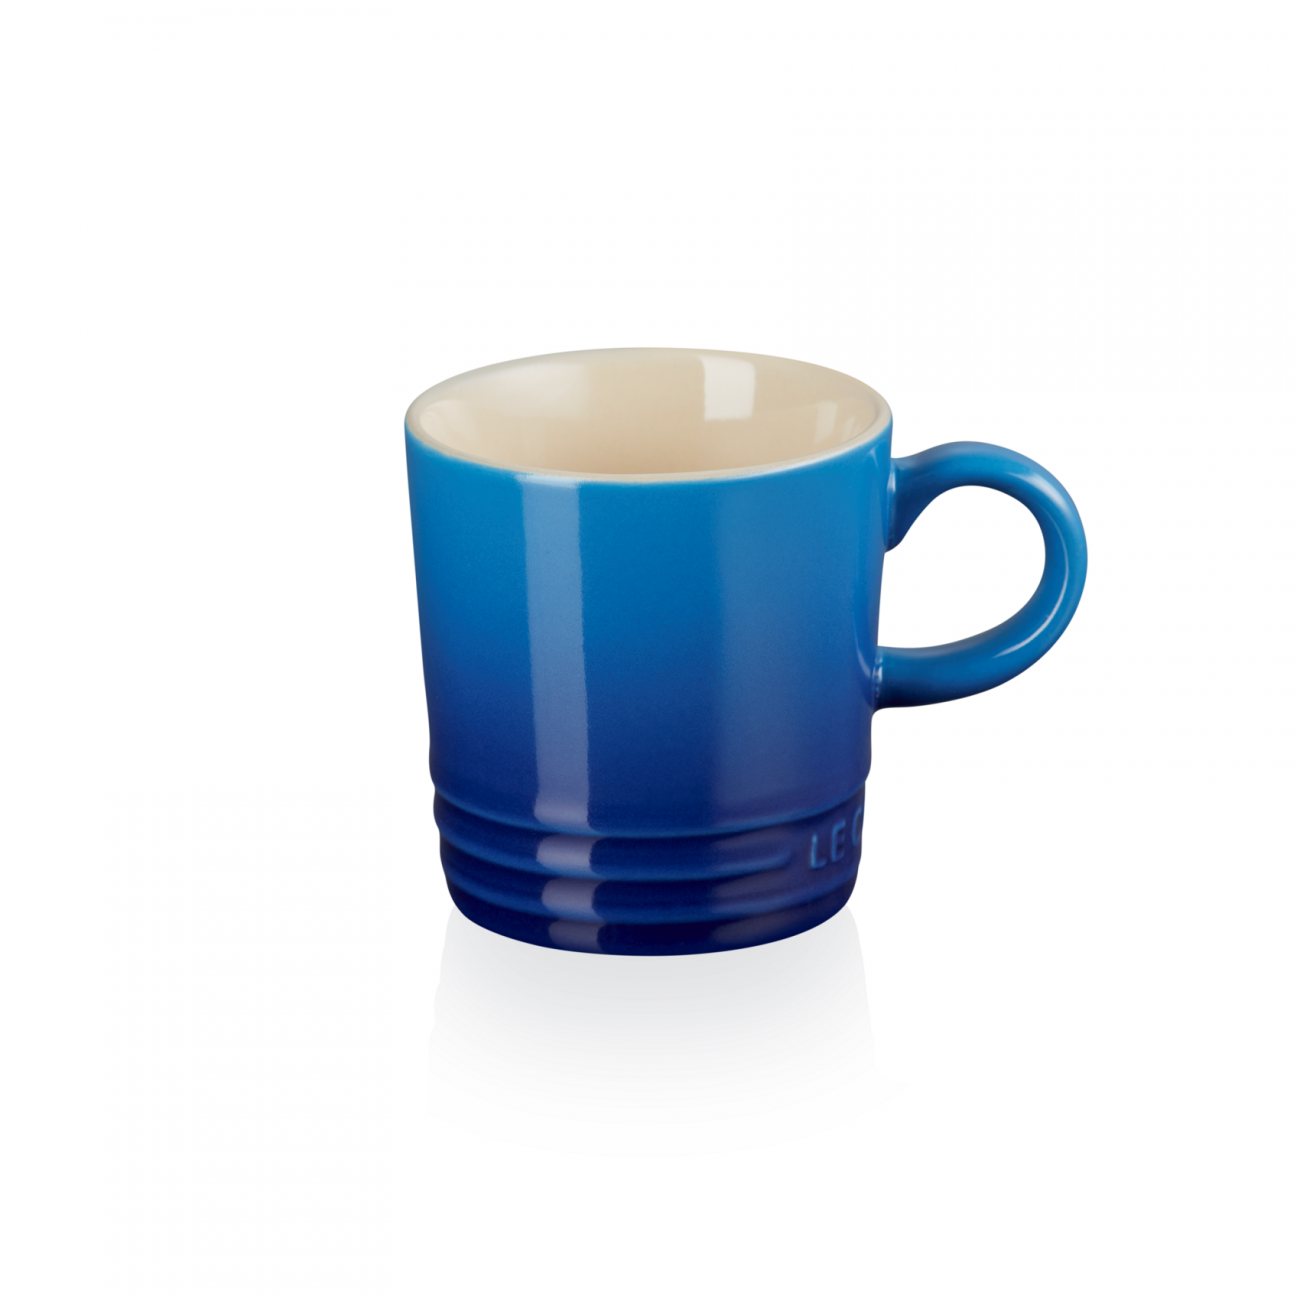 https://www.tattahome.com/111581-large_default/le-creuset-espresso-cup-london-100-azure.jpg